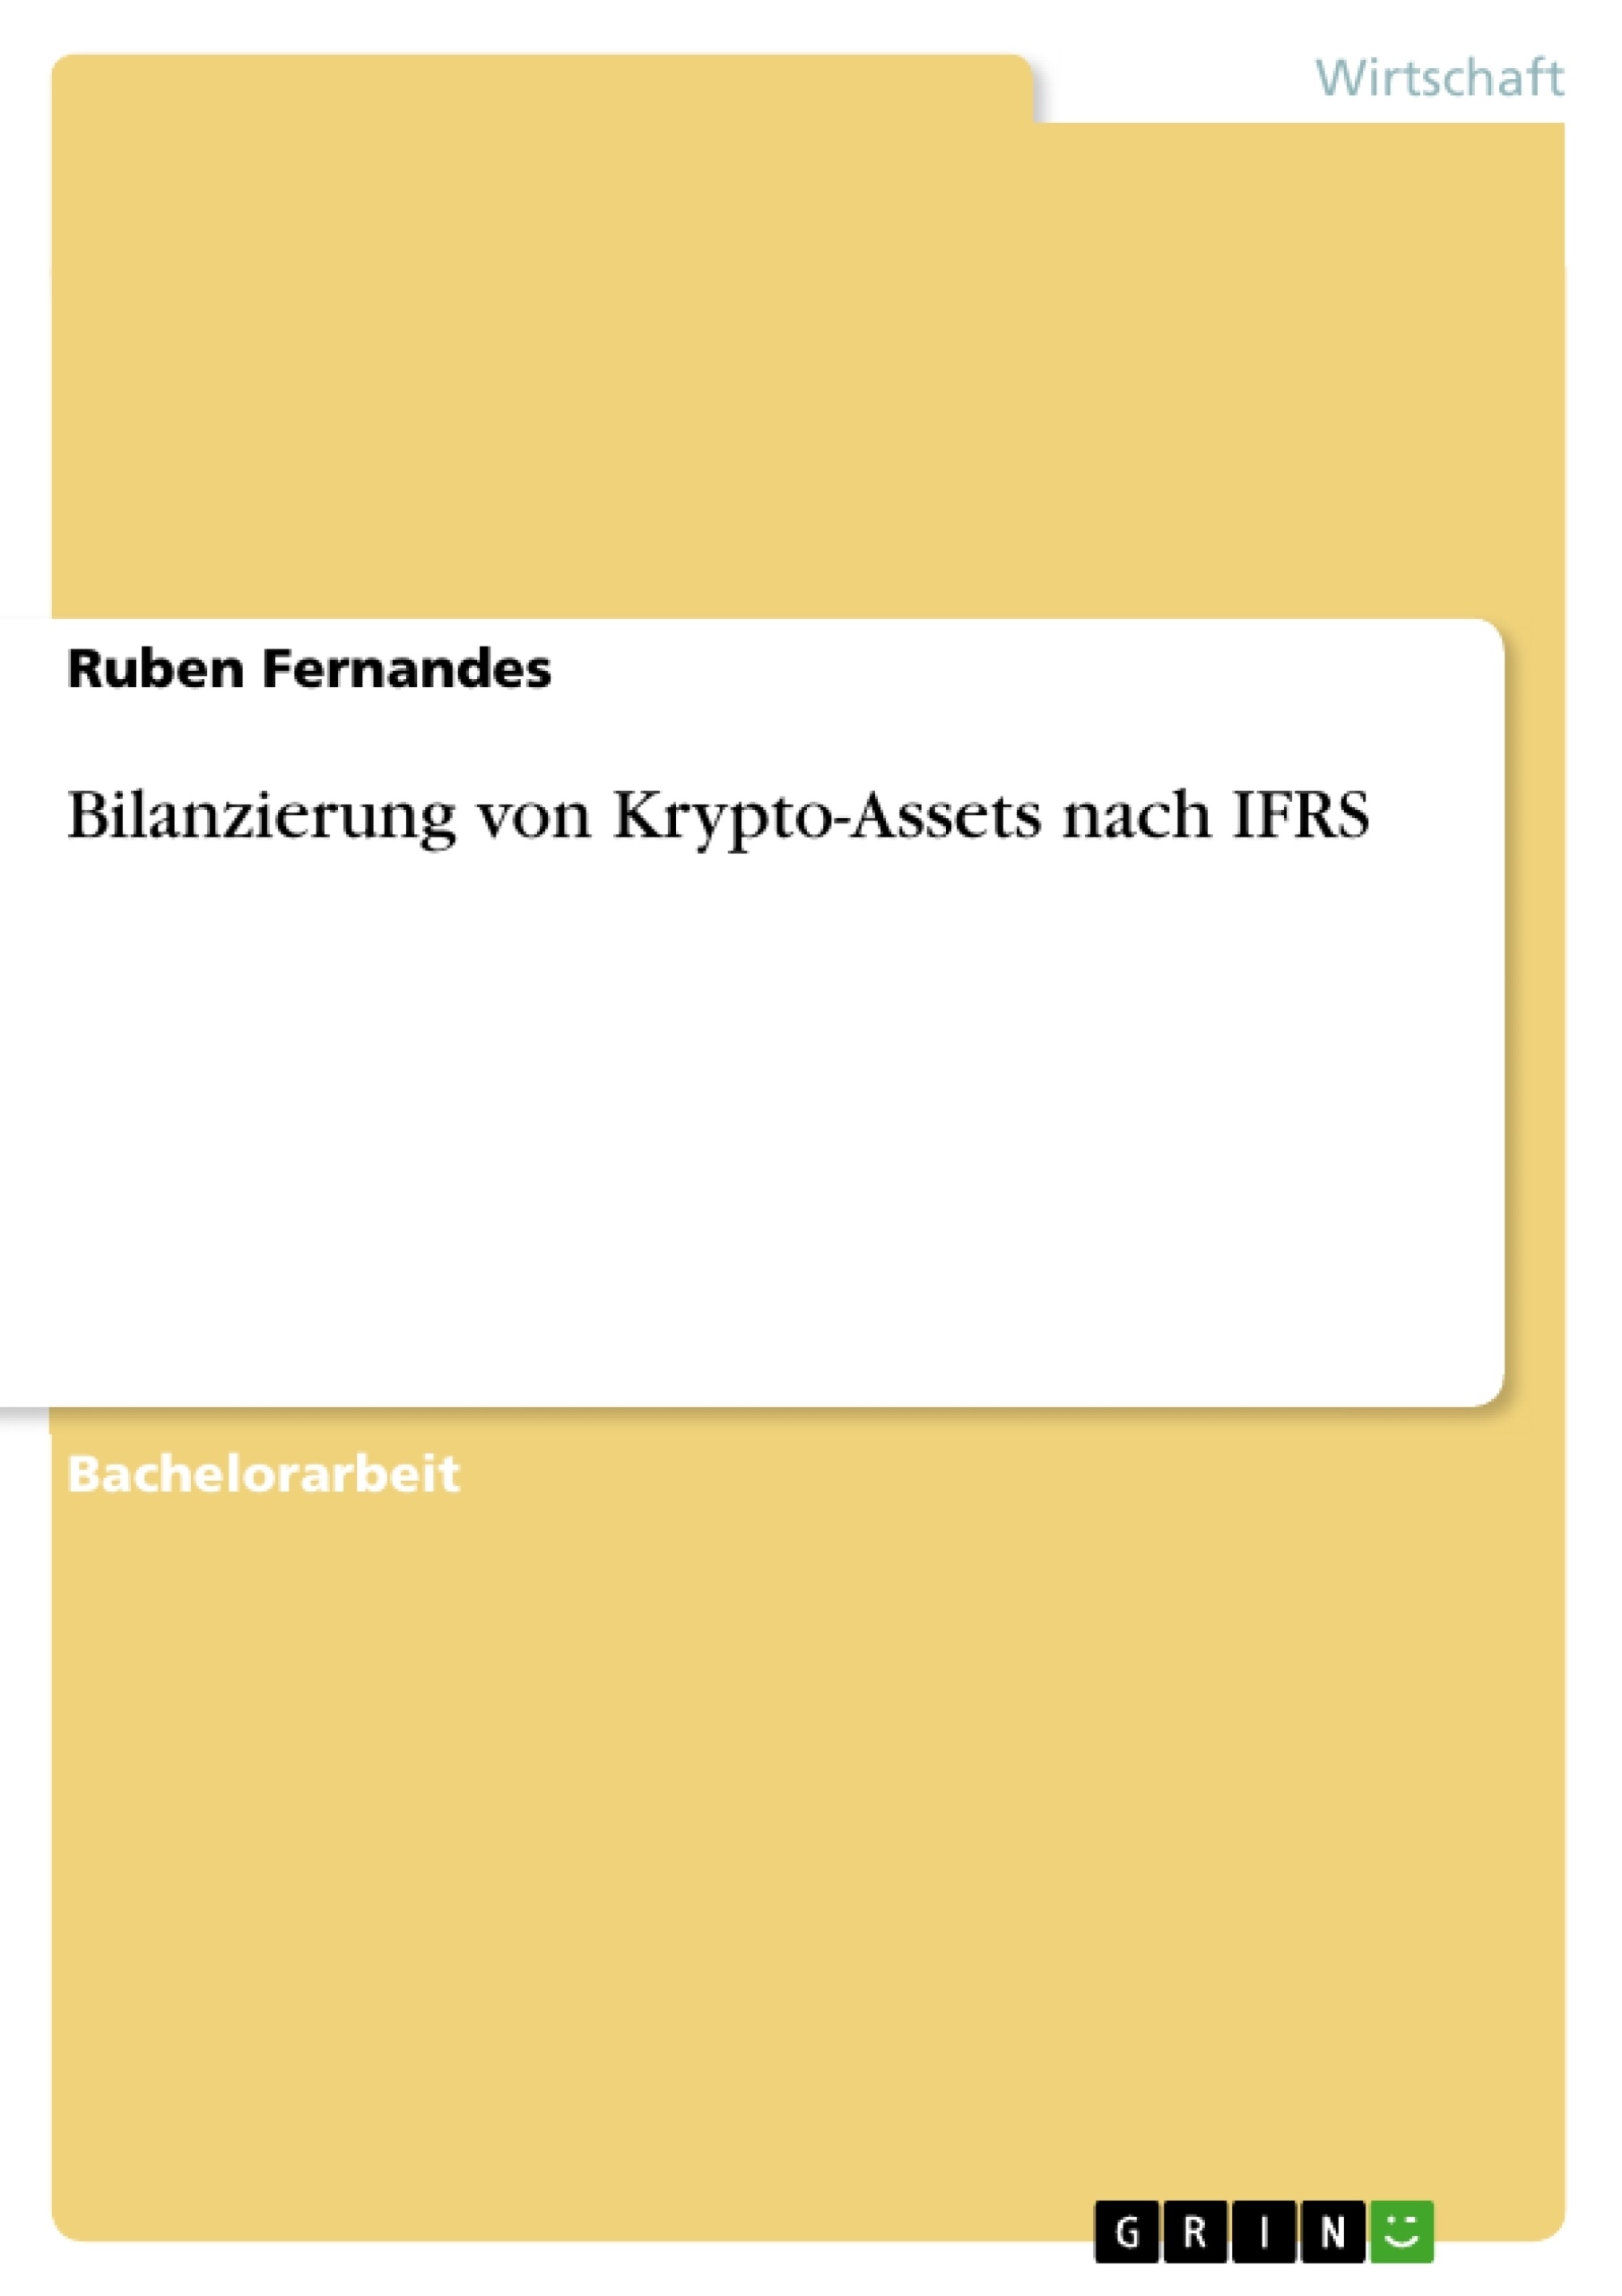 Title: Bilanzierung von Krypto-Assets nach IFRS